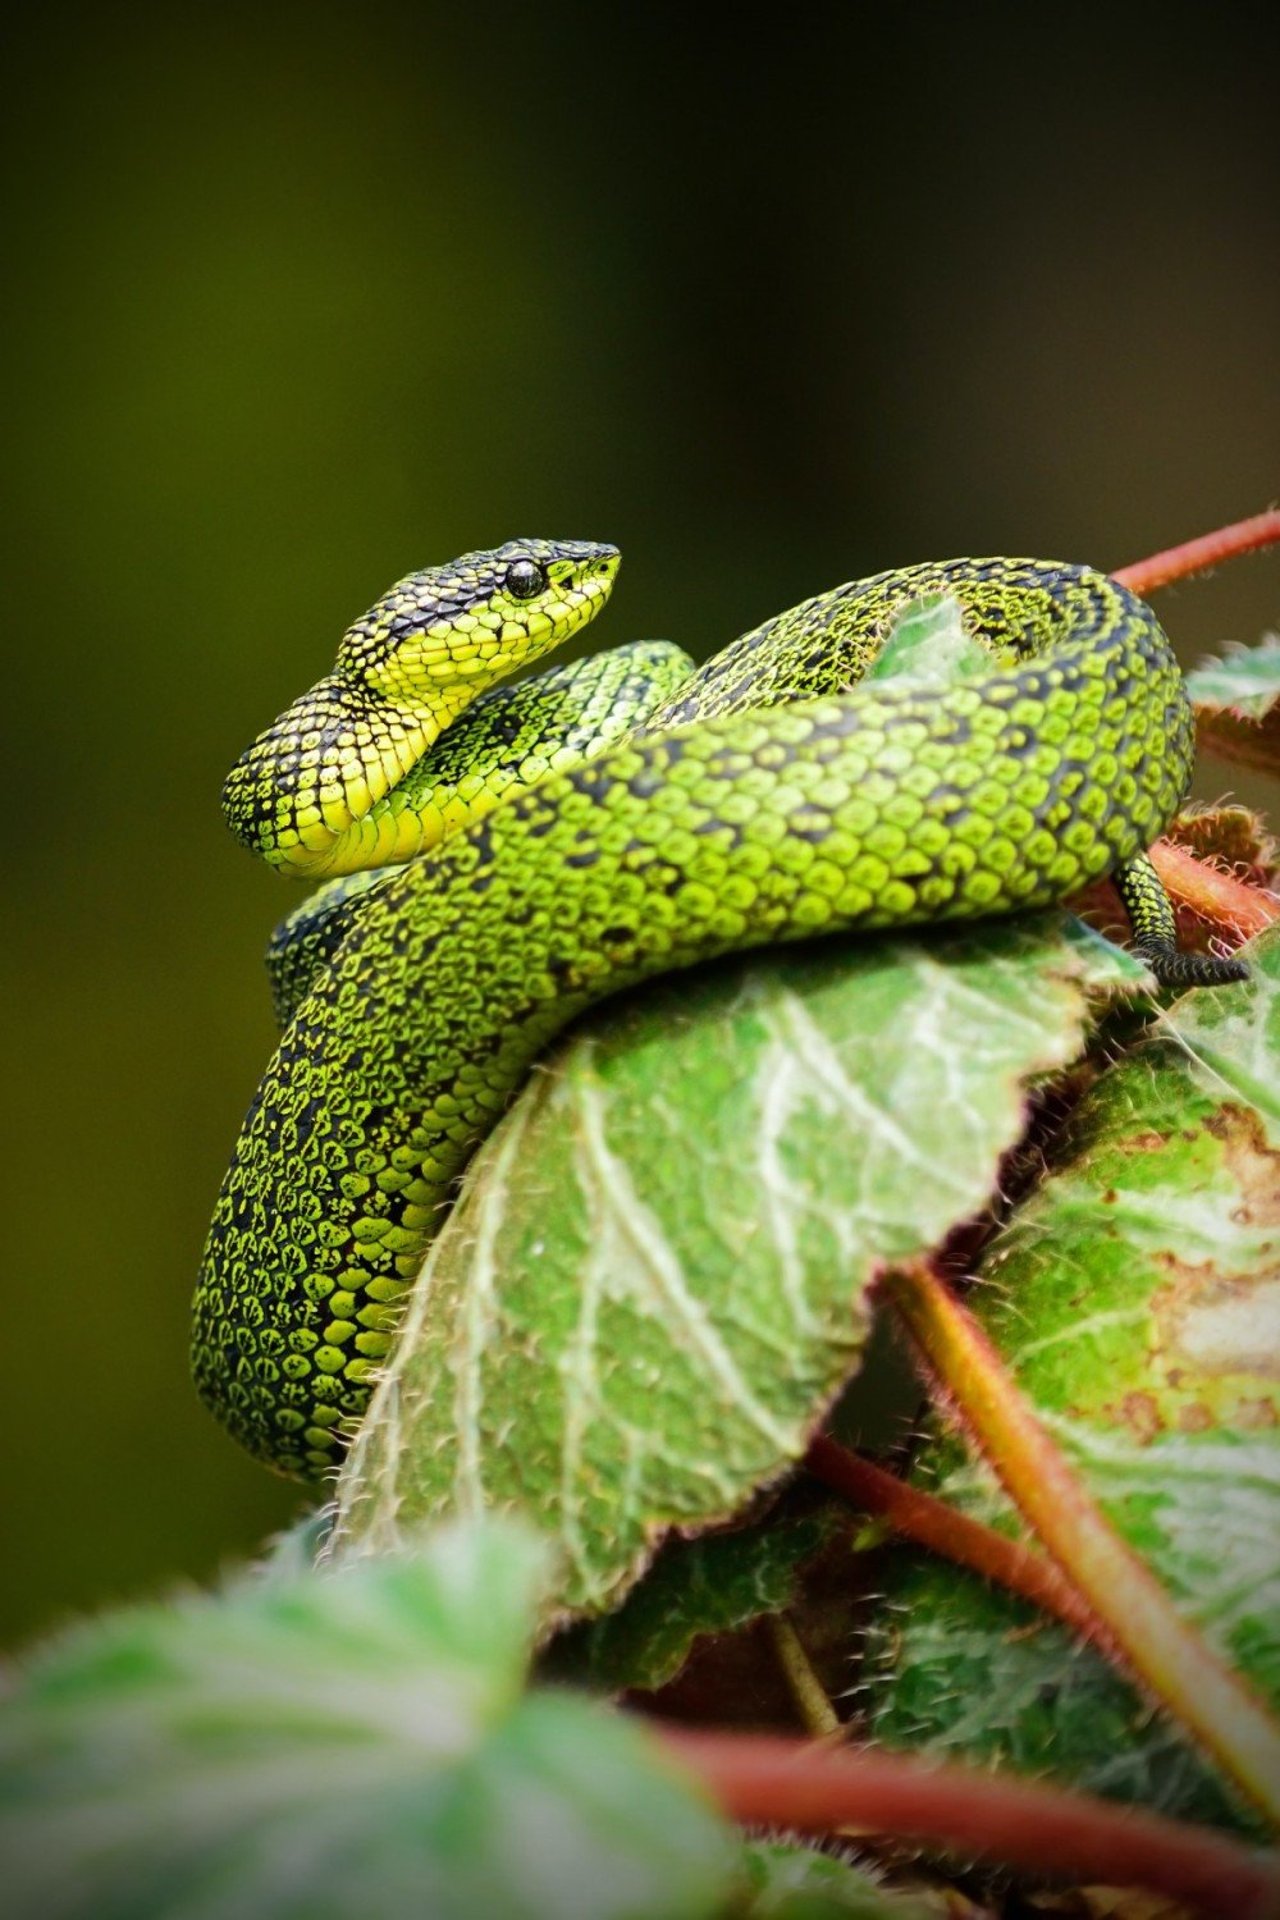 Una serpiente verde enrollando una hoja.